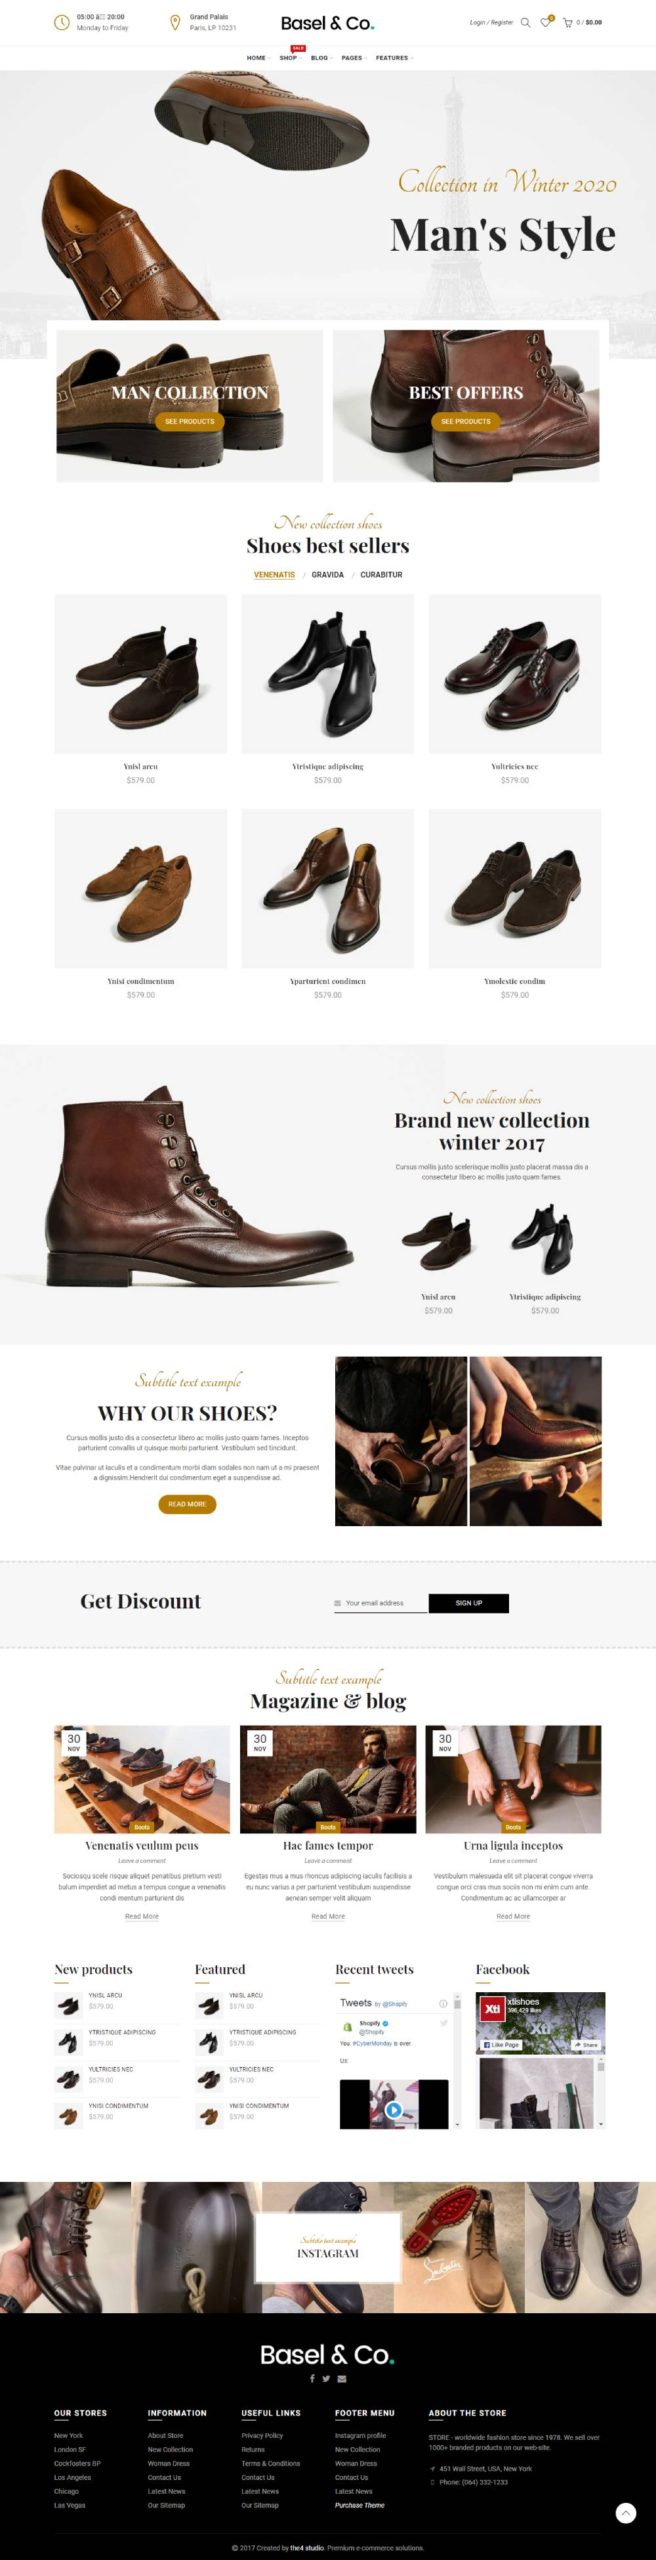 shoes website design